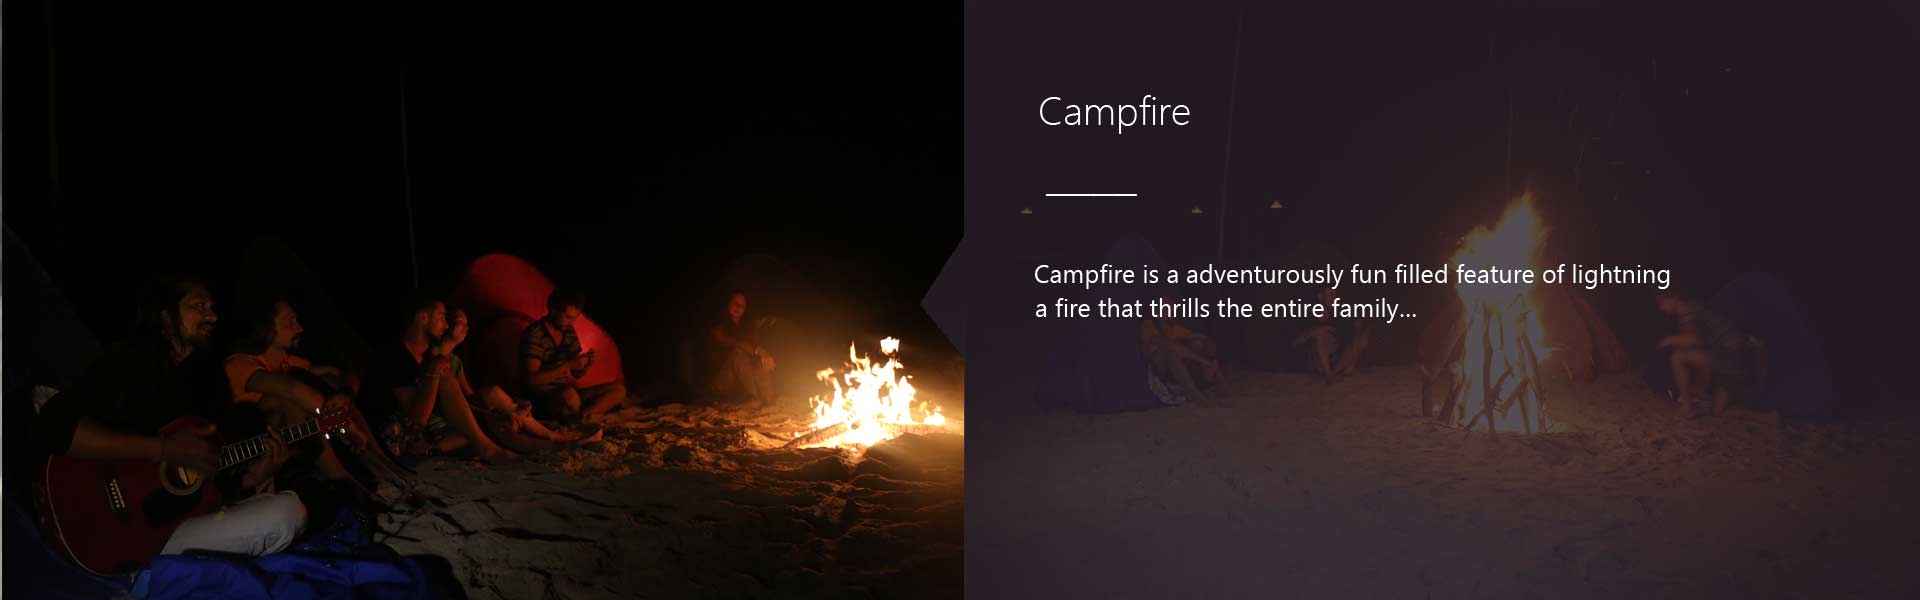 Campfire Activities in Resort